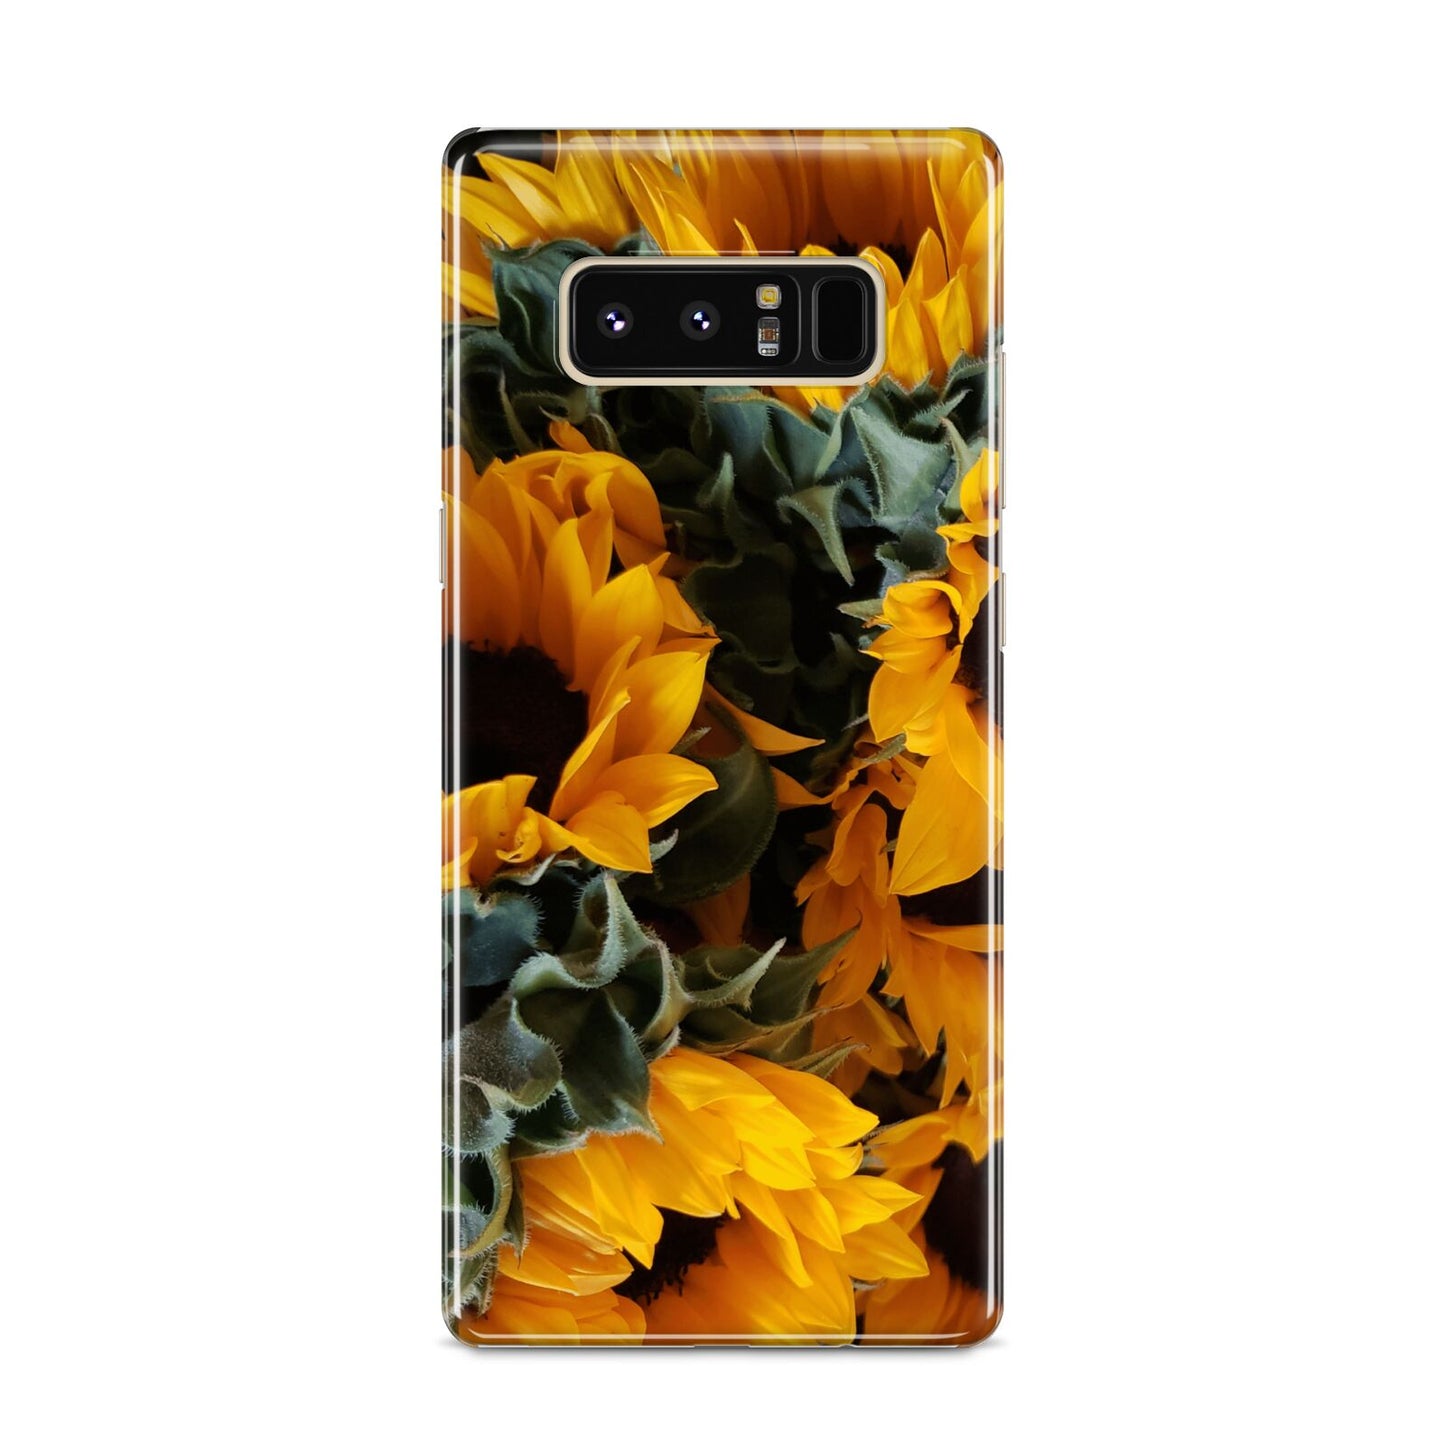 Sunflower Samsung Galaxy S8 Case